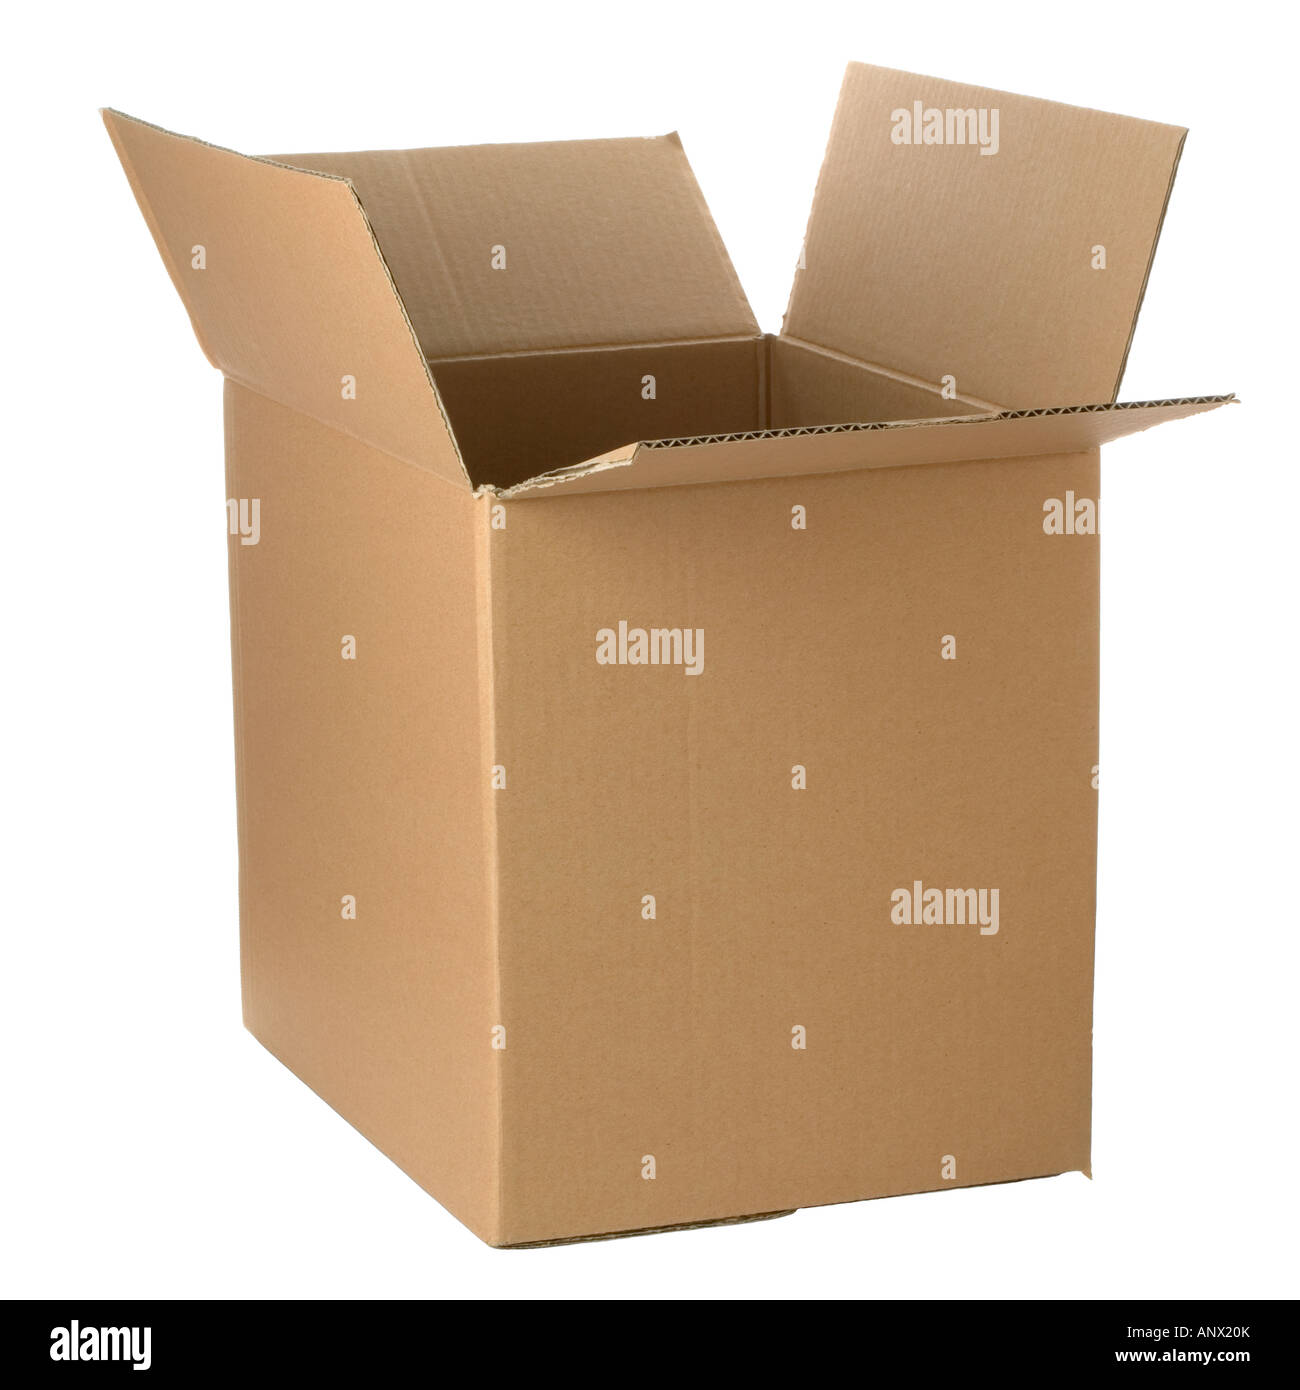 Caja de cartón marrón agregar su propio diseño o logotipo aislado en blanco Foto de stock